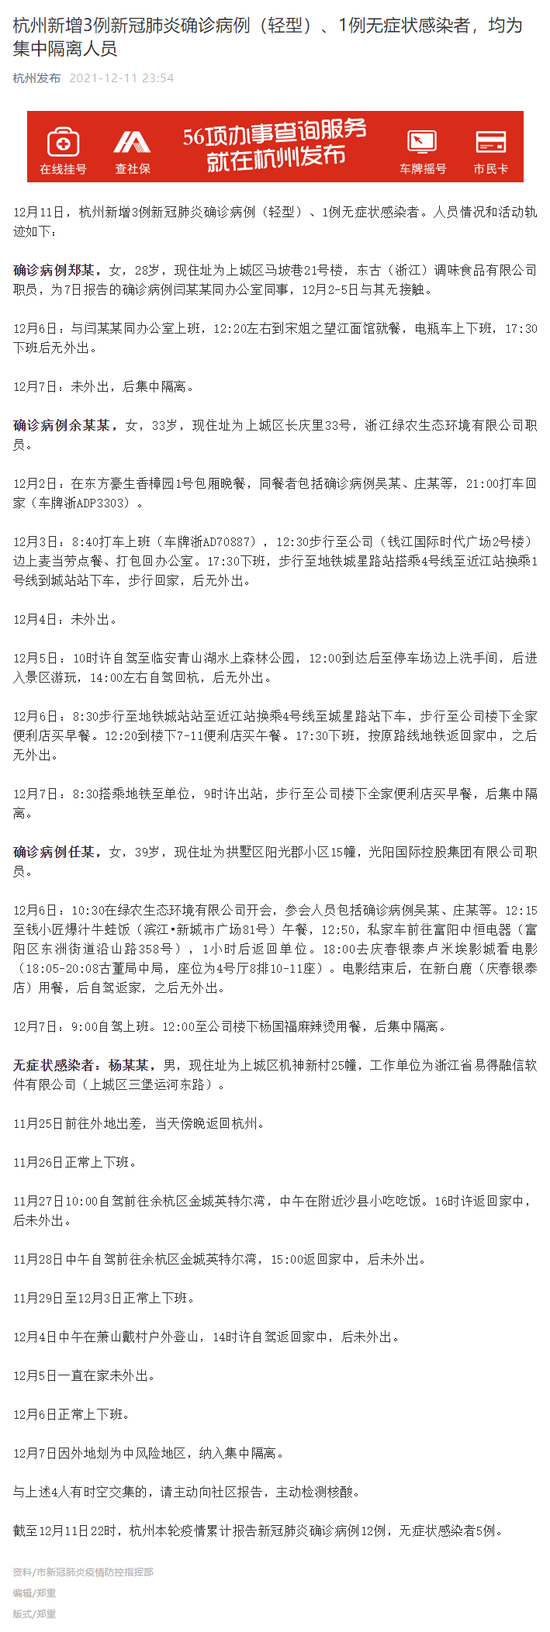 杭州新增3例新冠肺炎确诊病例、1例无症状感染者